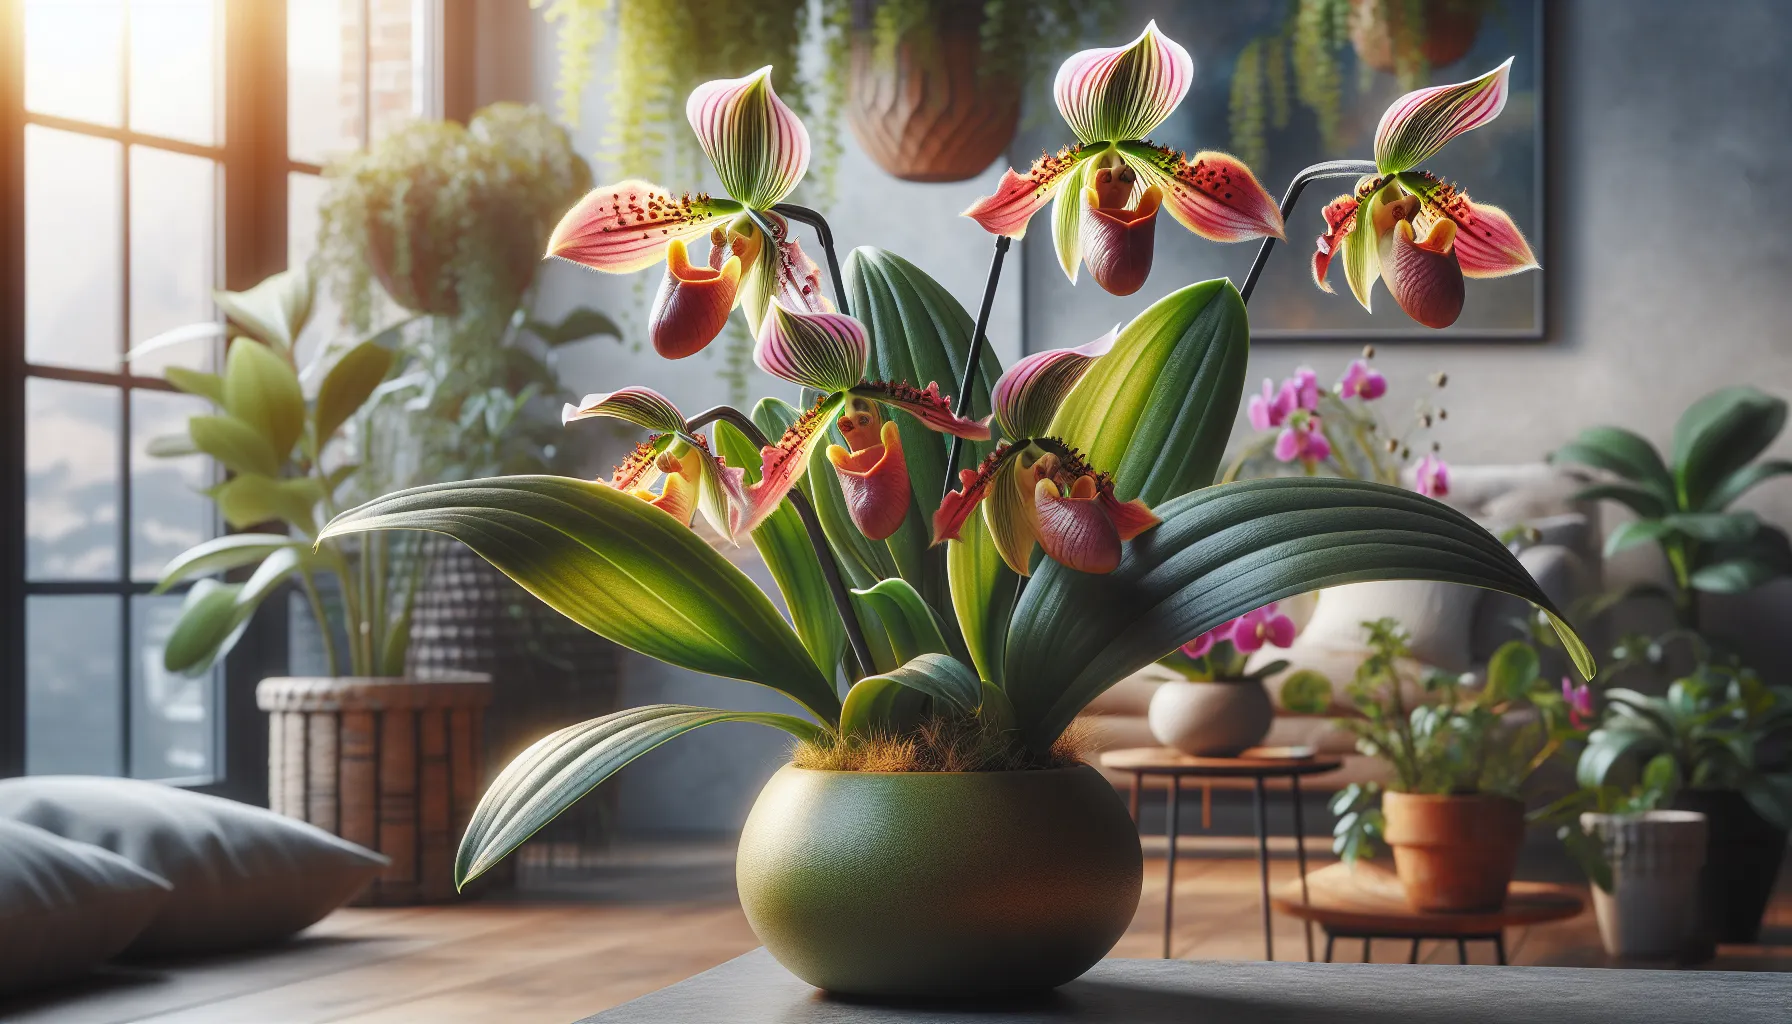 Imagen de una hermosa orquídea zapato Paphiopedilum en un entorno hogareño, con hojas verdes y una flor exótica de colores vibrantes.